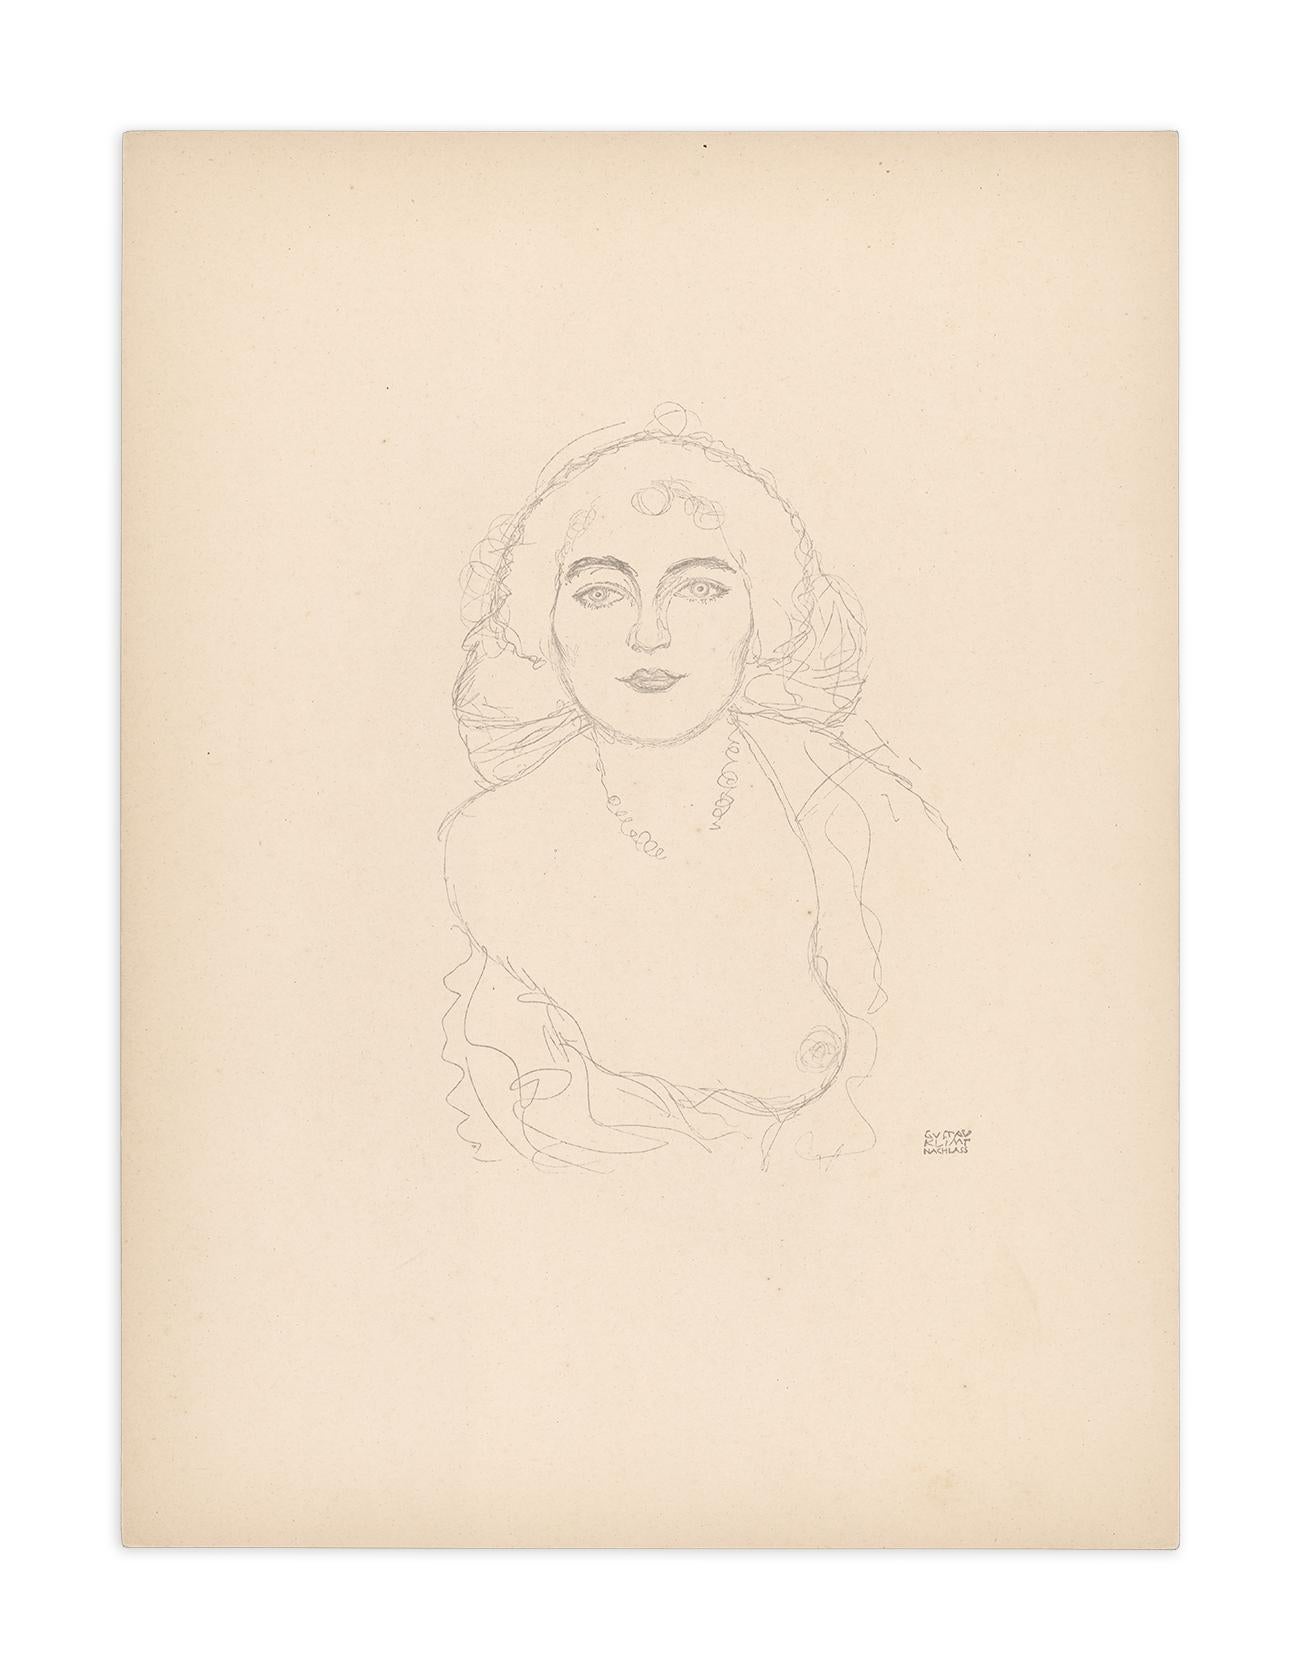 Bust of a Woman, Gustav Klimt Handzeichnungen (Sketch), Thyrsos Verlag, 1922 - Vienna Secession Print by (after) Gustav Klimt